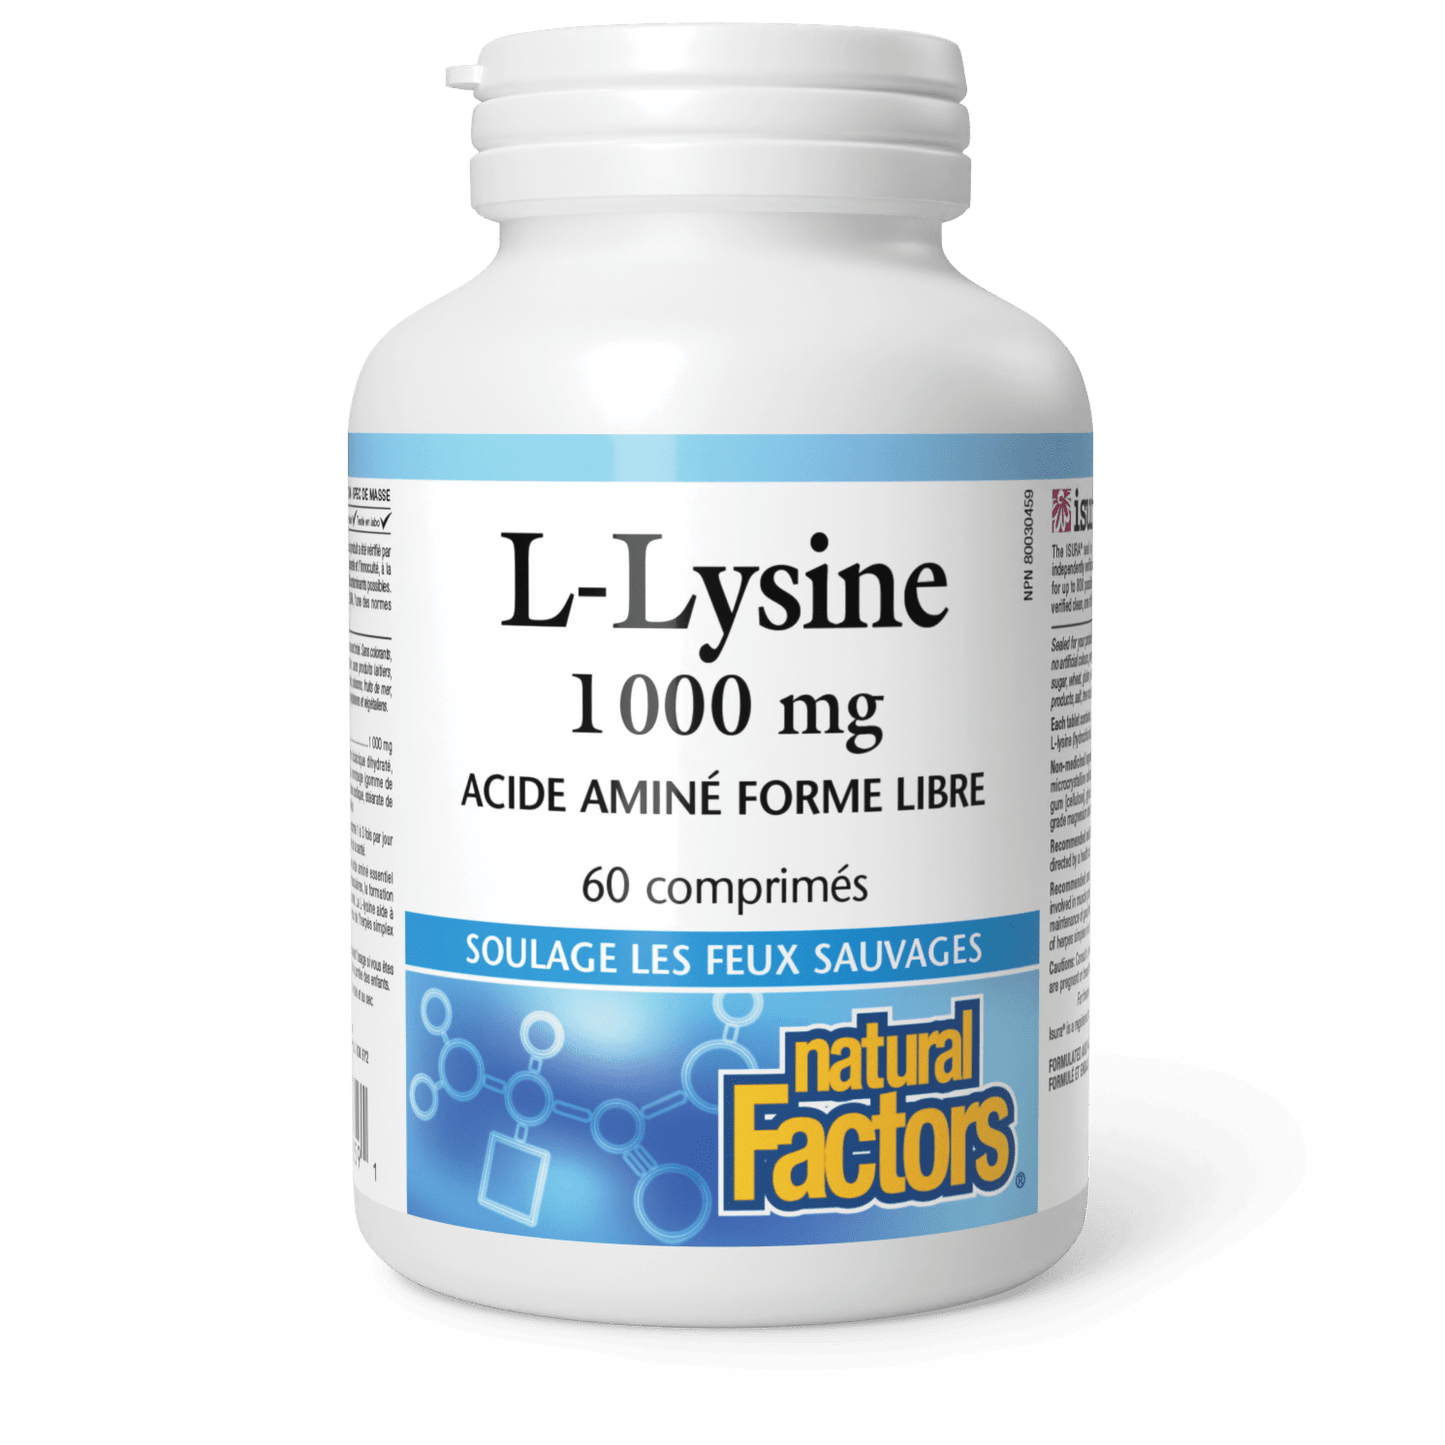 Lysine 1 000 mg, Natural Factors|v|image|2859